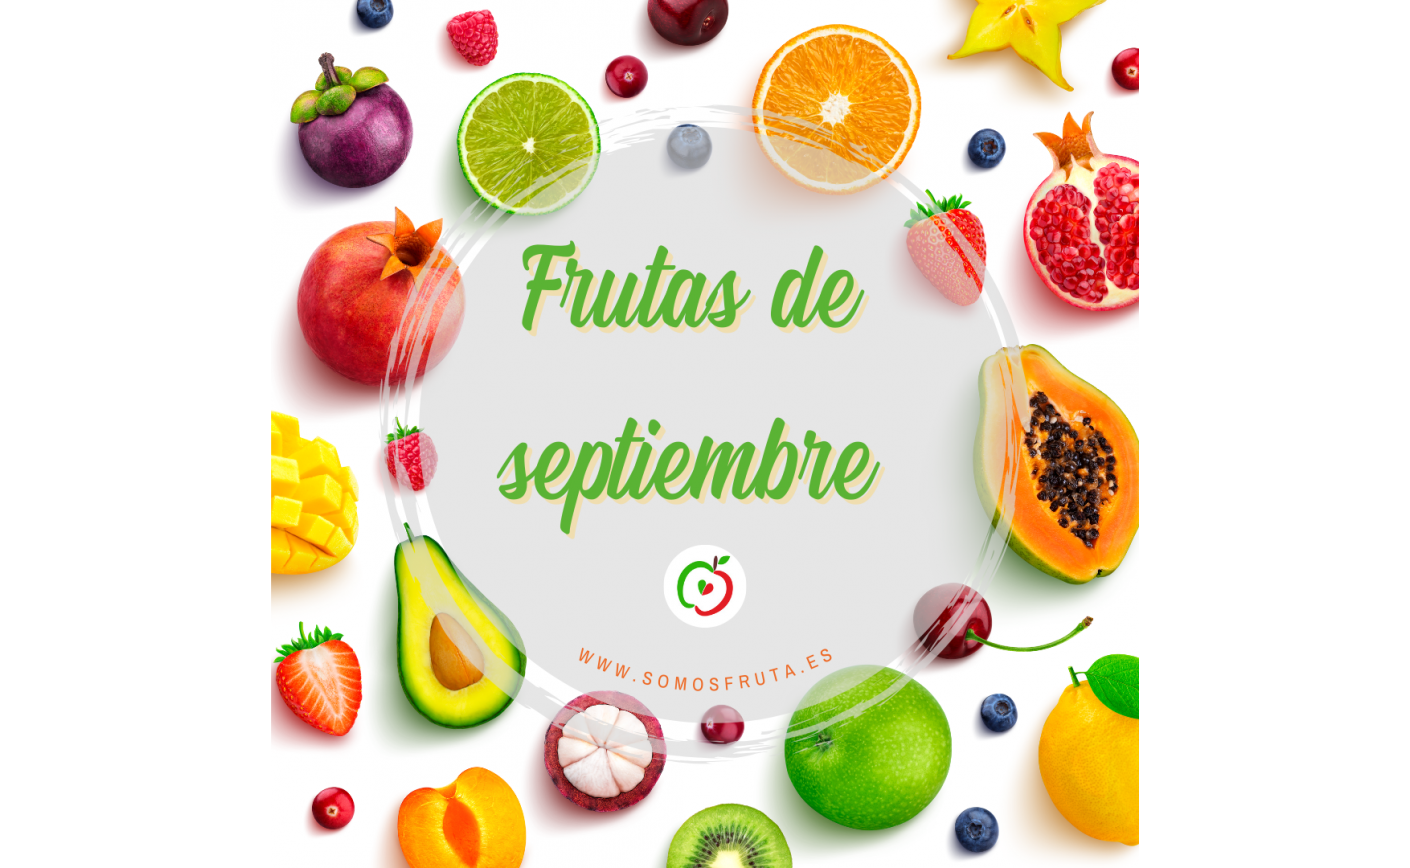 Frutas de septiembre: Un análisis nutricional